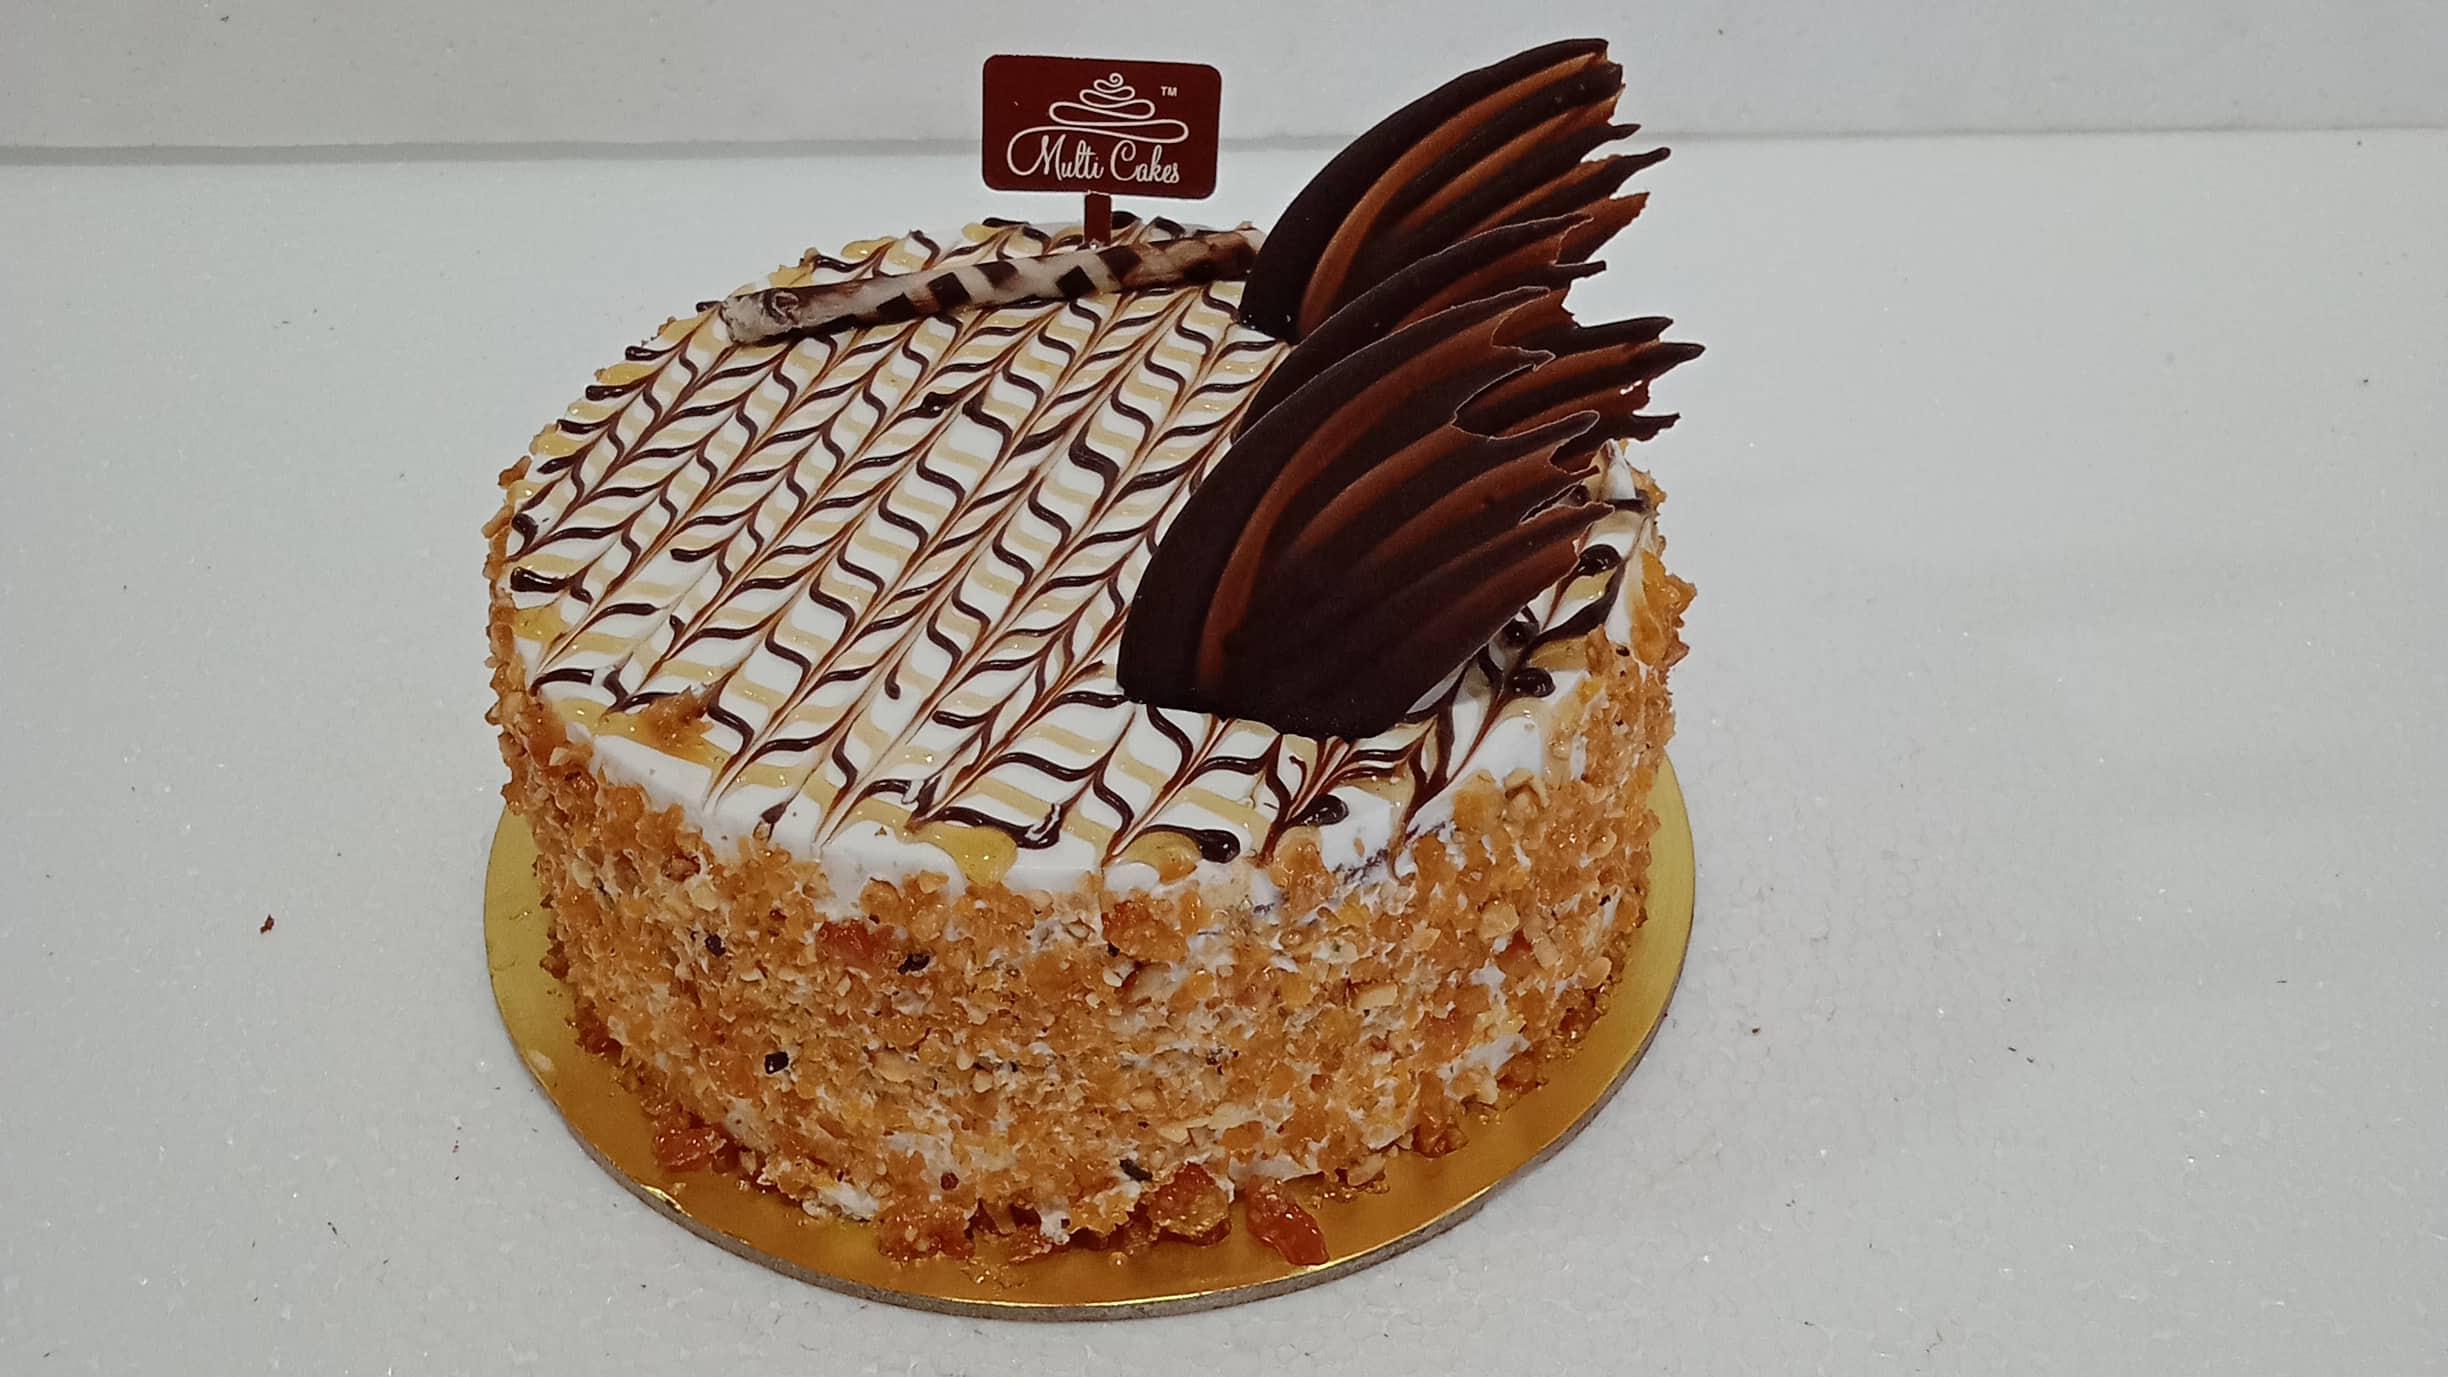 Multi sports cake - Decorated Cake by Angel Cake Design - CakesDecor